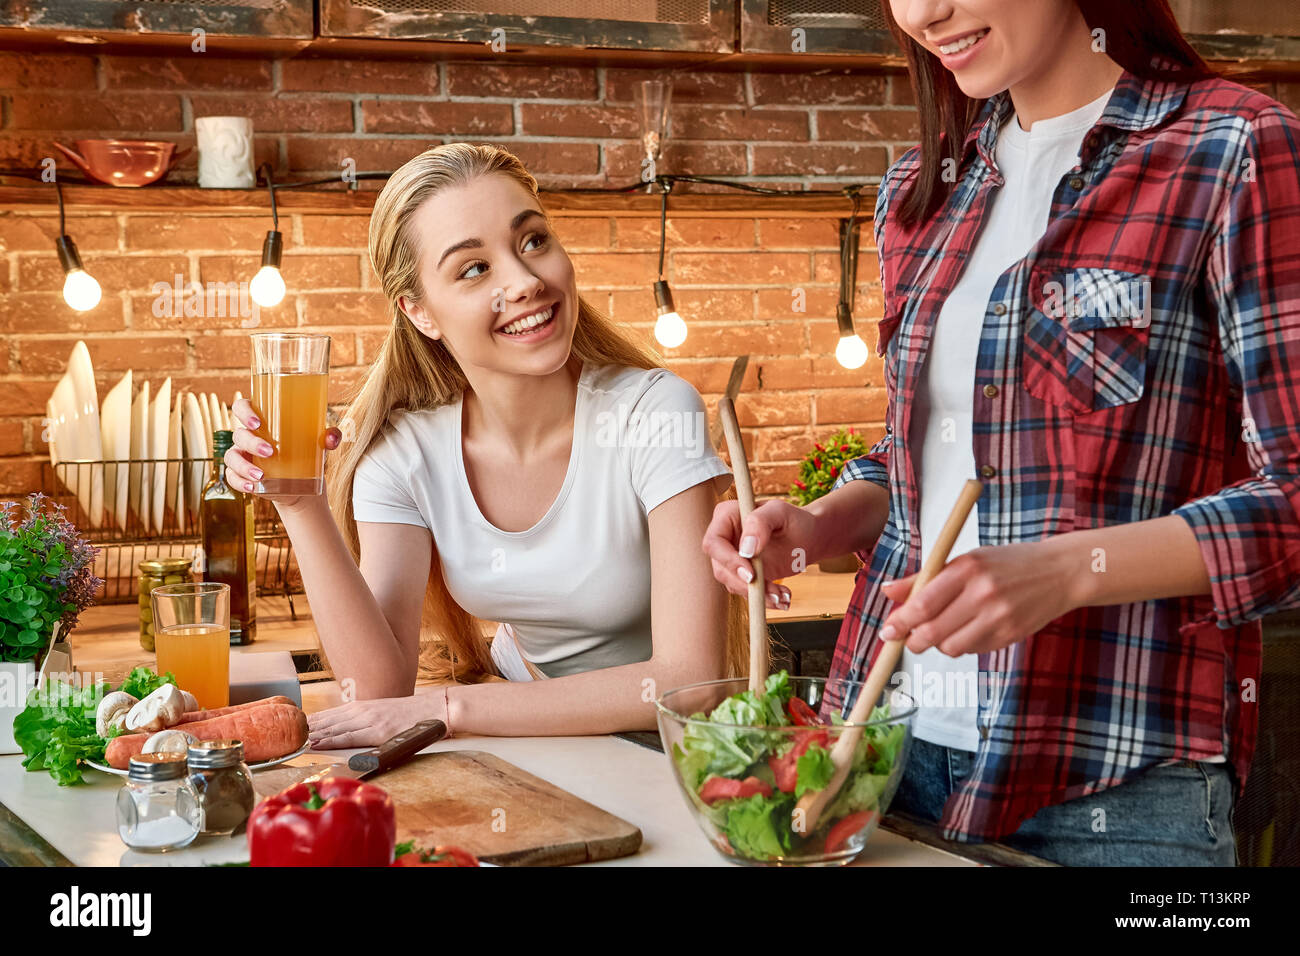 Porträt von zwei attraktive Frauen, Spaß zu haben, während der Vorbereitung Gemüse Salat. Sie sind voll in den Prozess einbezogen. Blonde Mädchen im weißen T-Shirt betrachtet ihren Freund mit einem Lächeln. Ihr dunkelhaarigen Freund in kariertem Hemd ist das Mischen von gehacktes Gemüse in eine Schüssel geben. Stockfoto